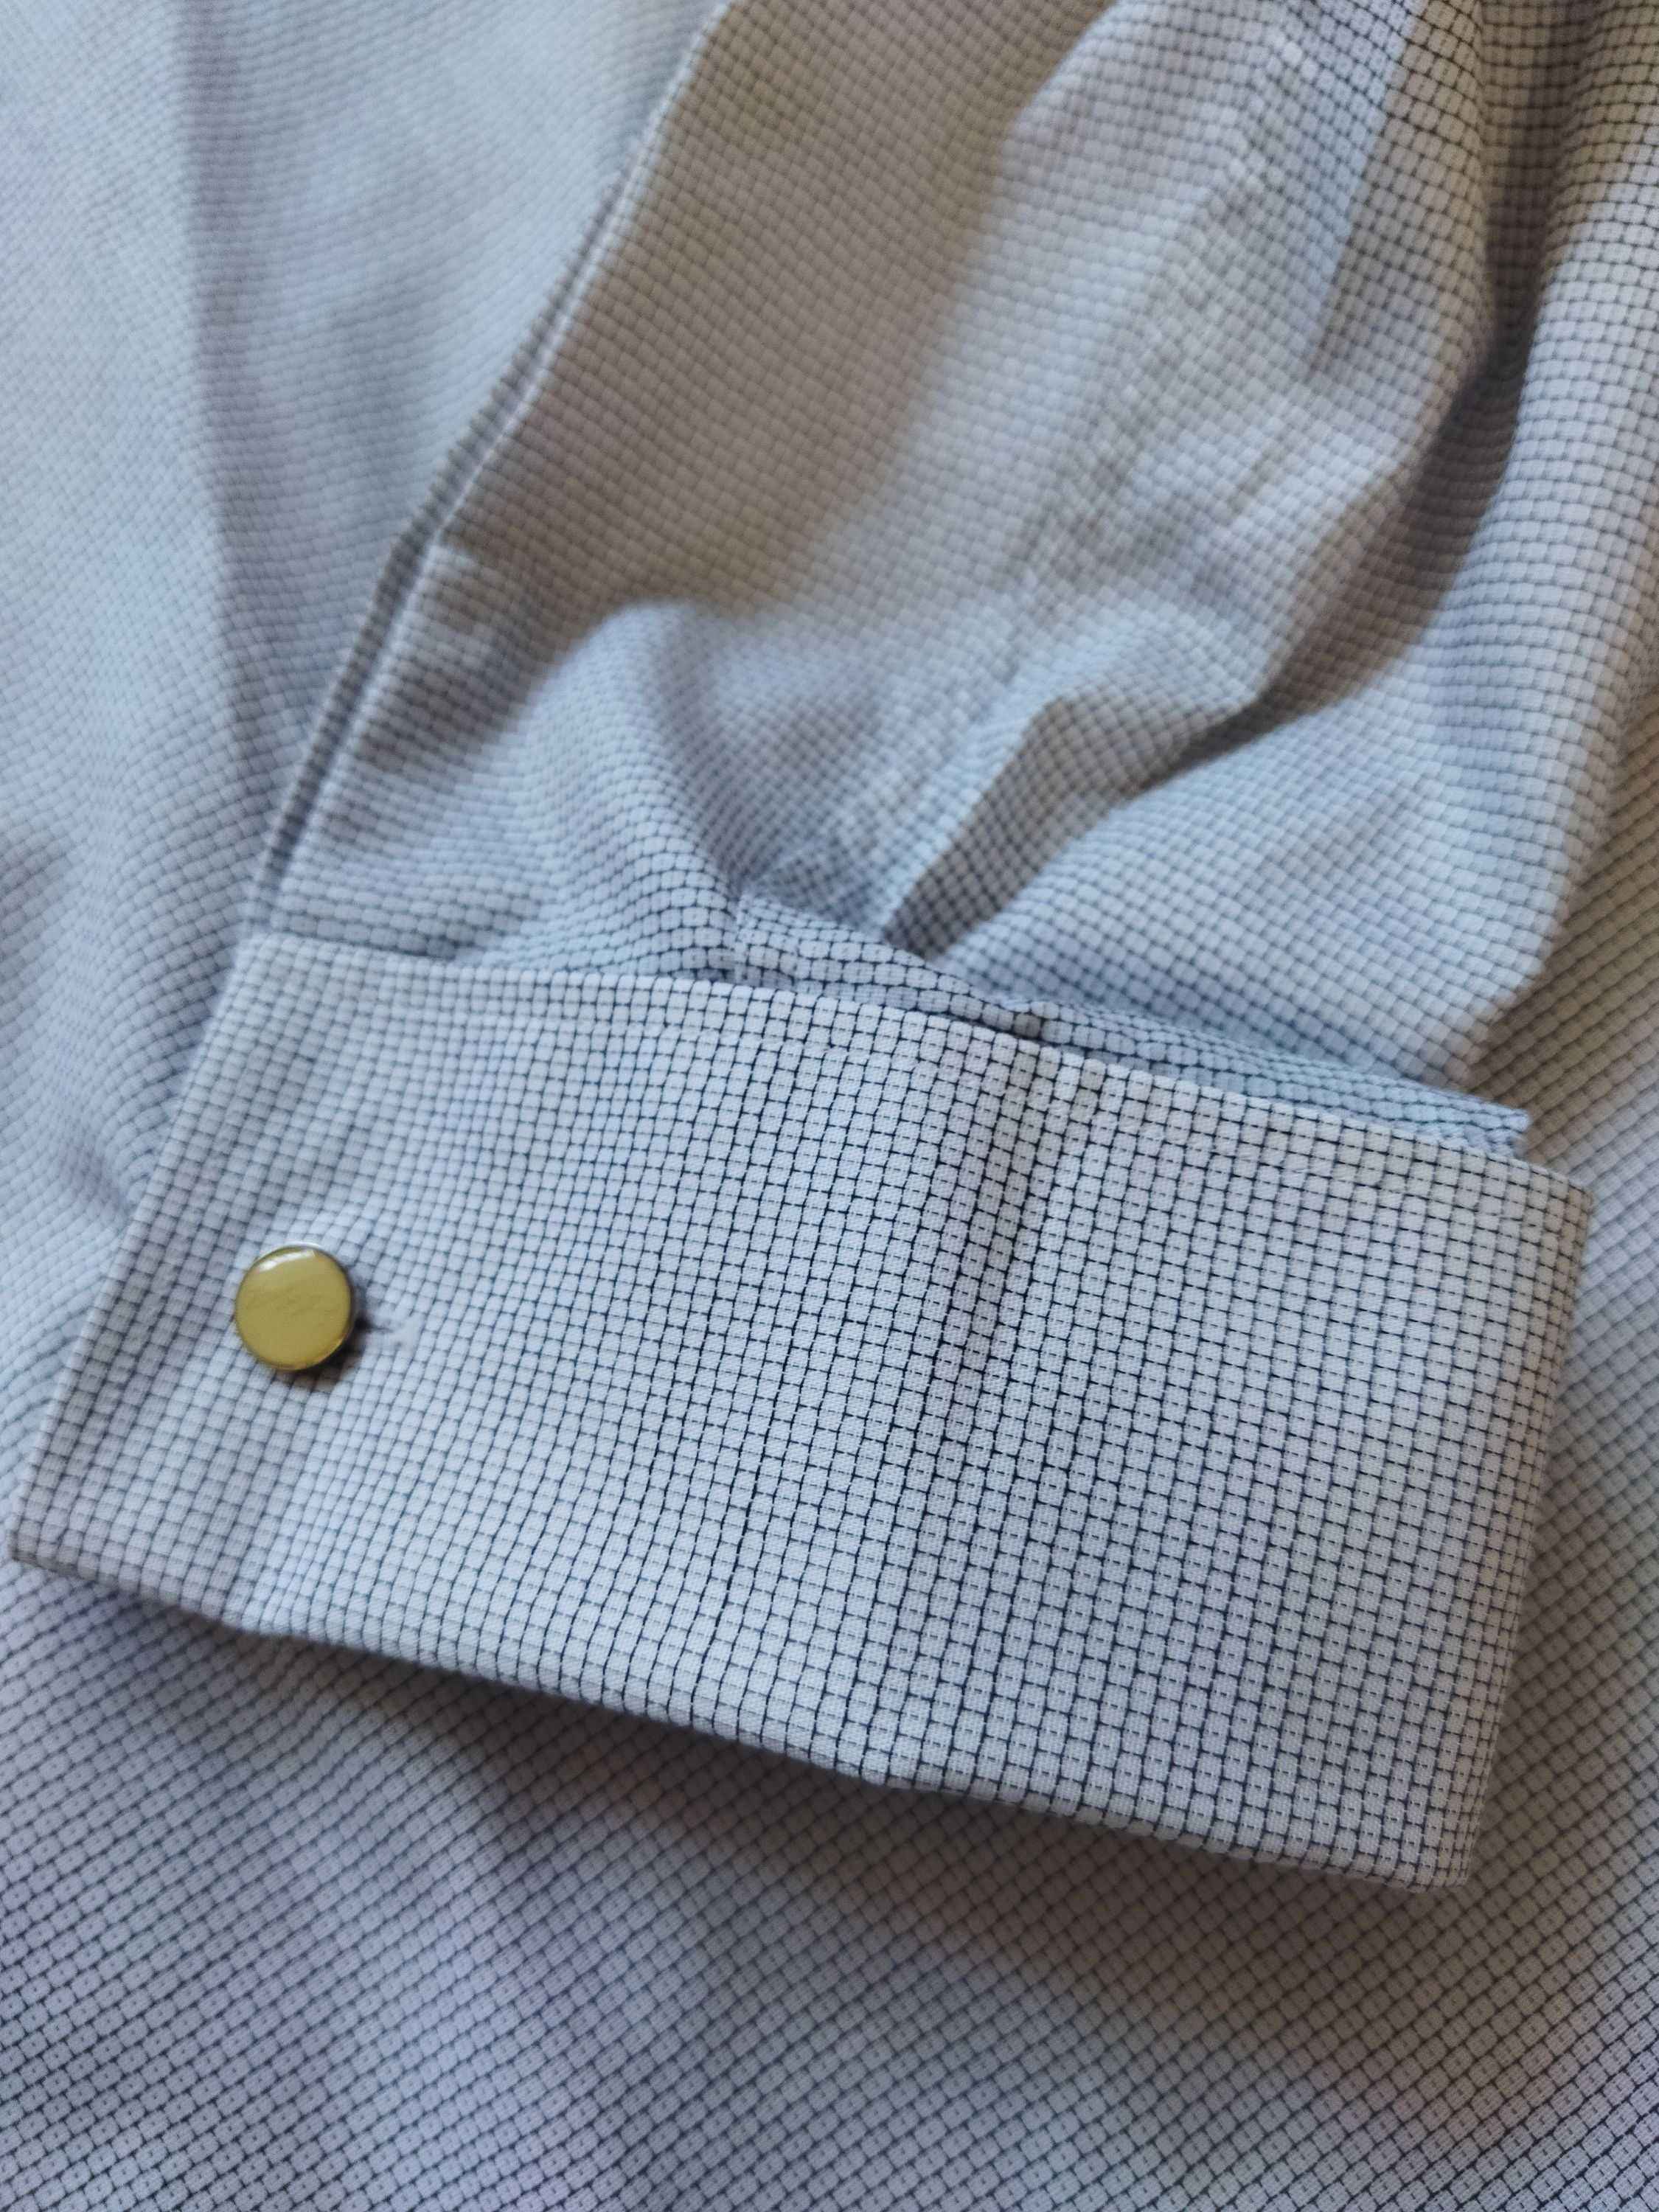 Рубашка Hugo Boss (Германия) с запонками,оригинал,новая,р-р 52